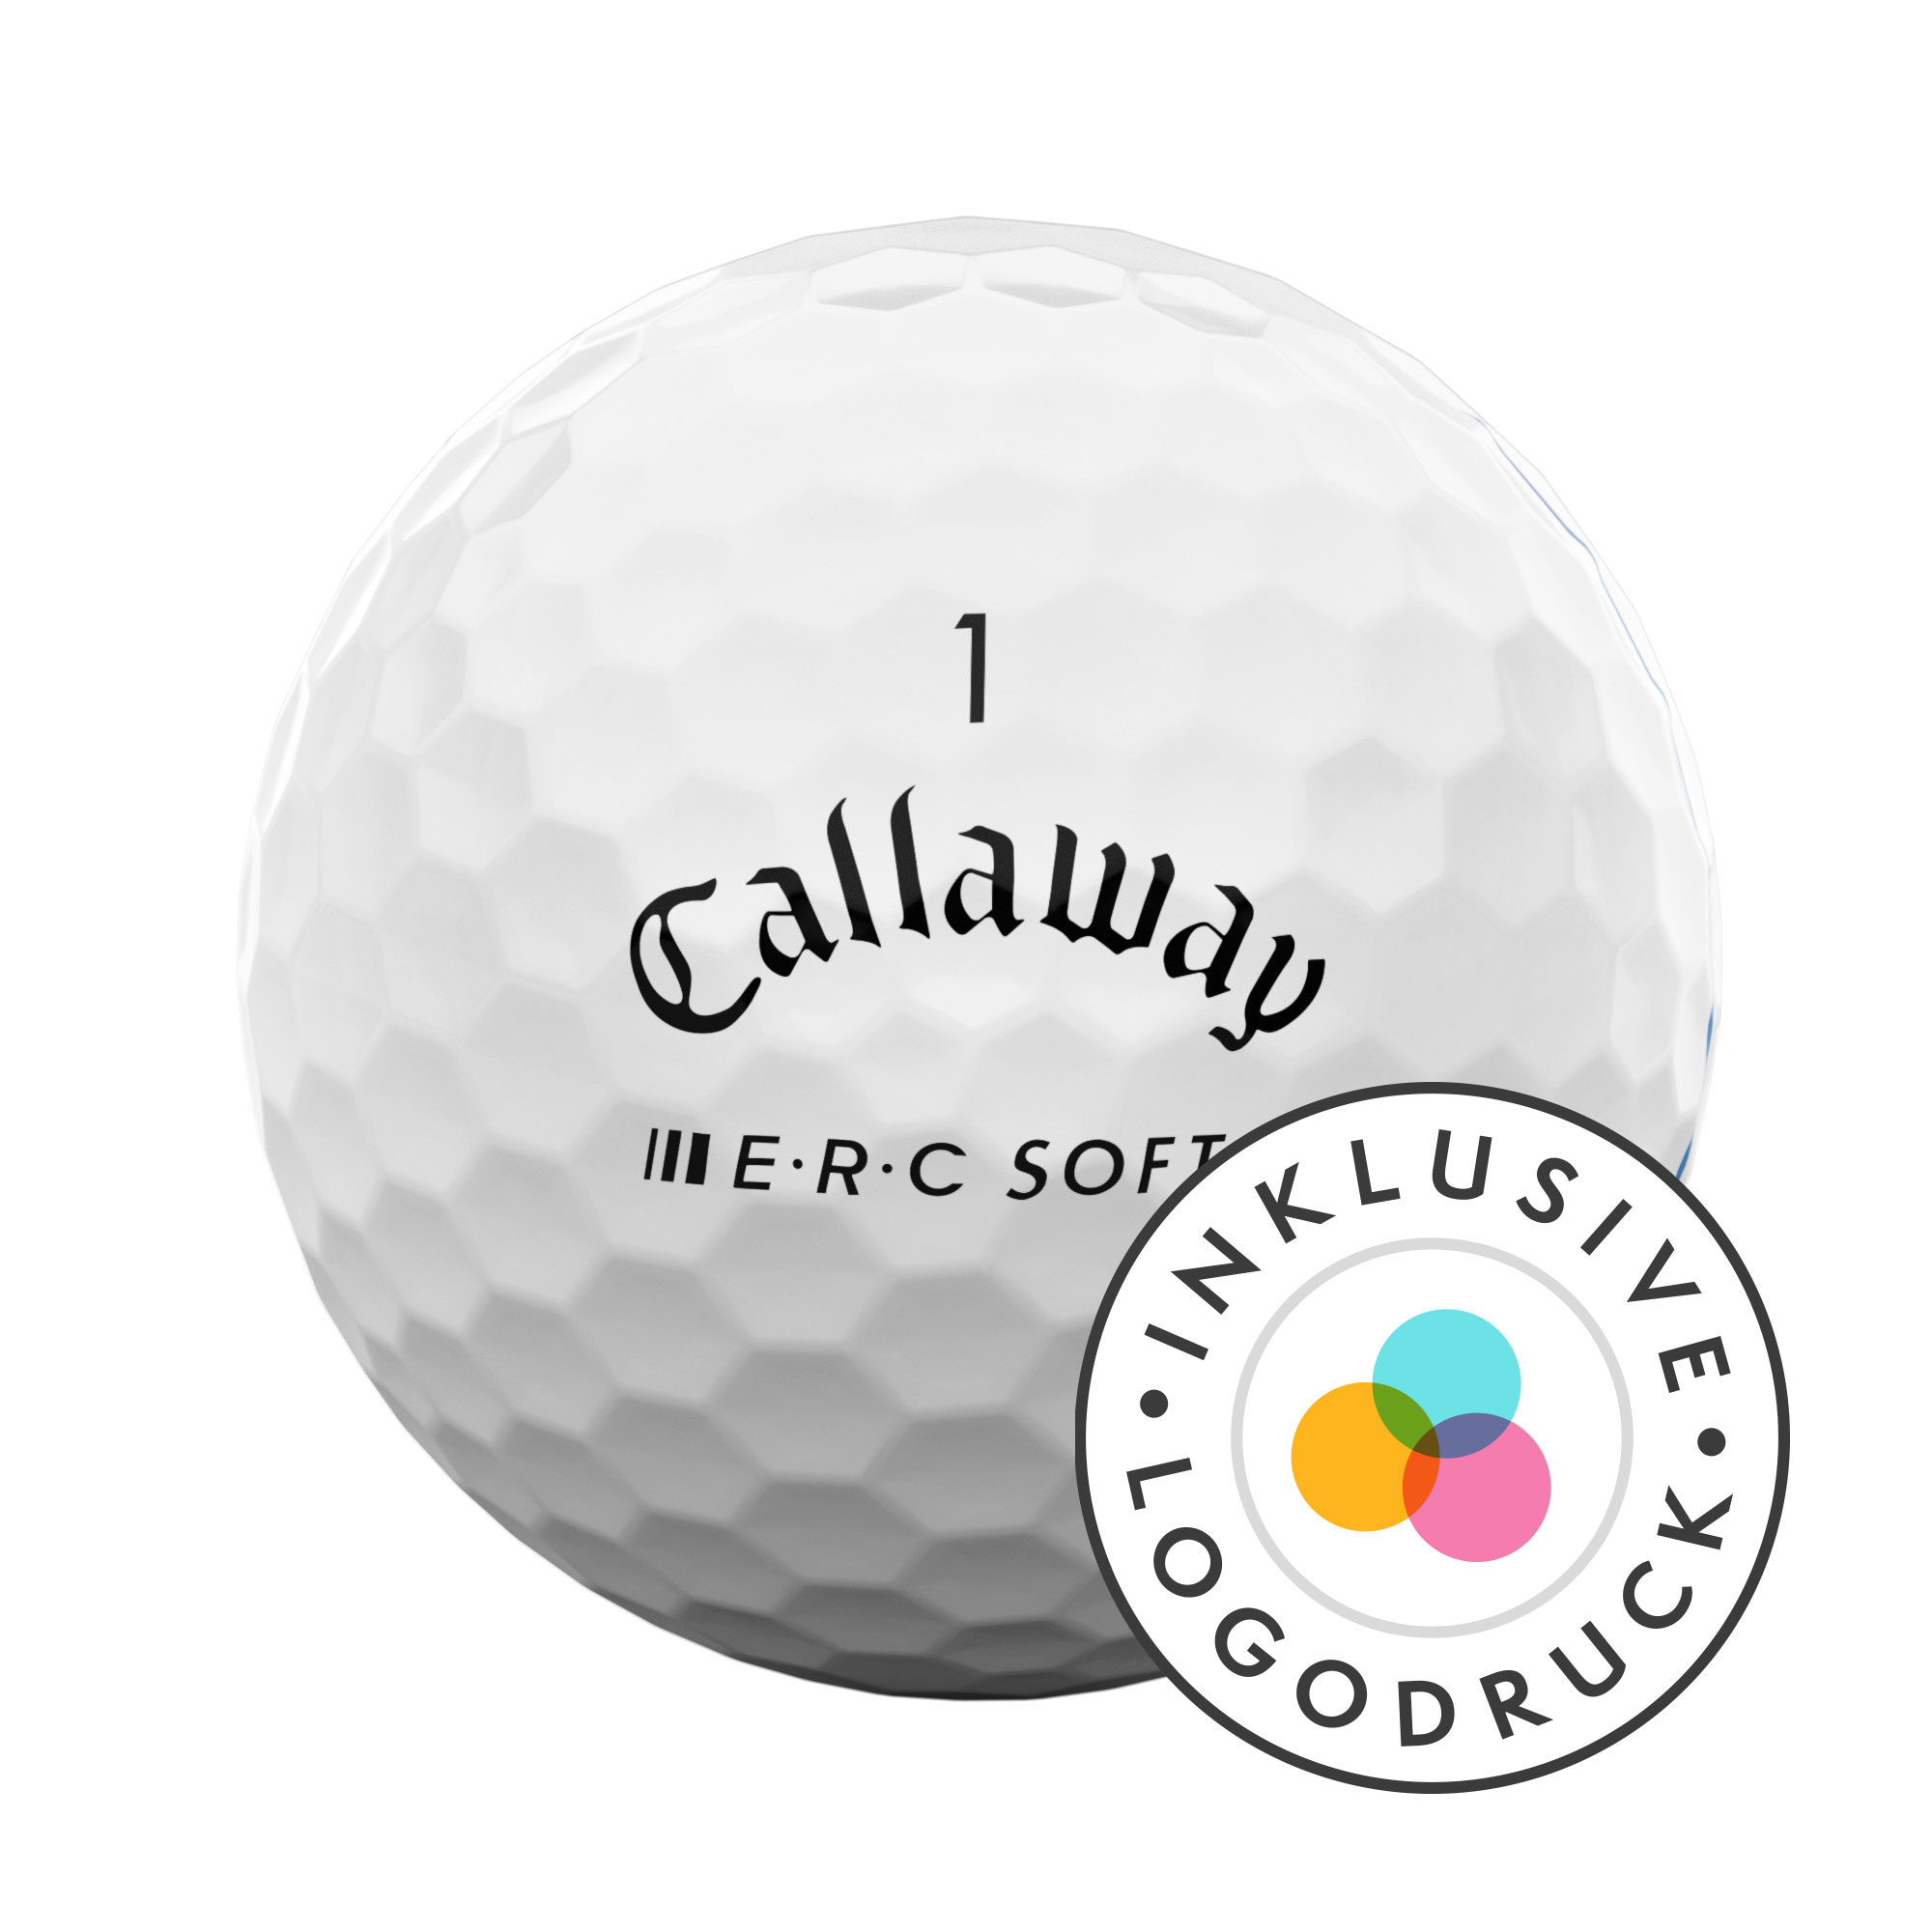 Callaway E.R.C. Soft Golfbälle bedruckt, weiss (VPE à 12 Bälle)